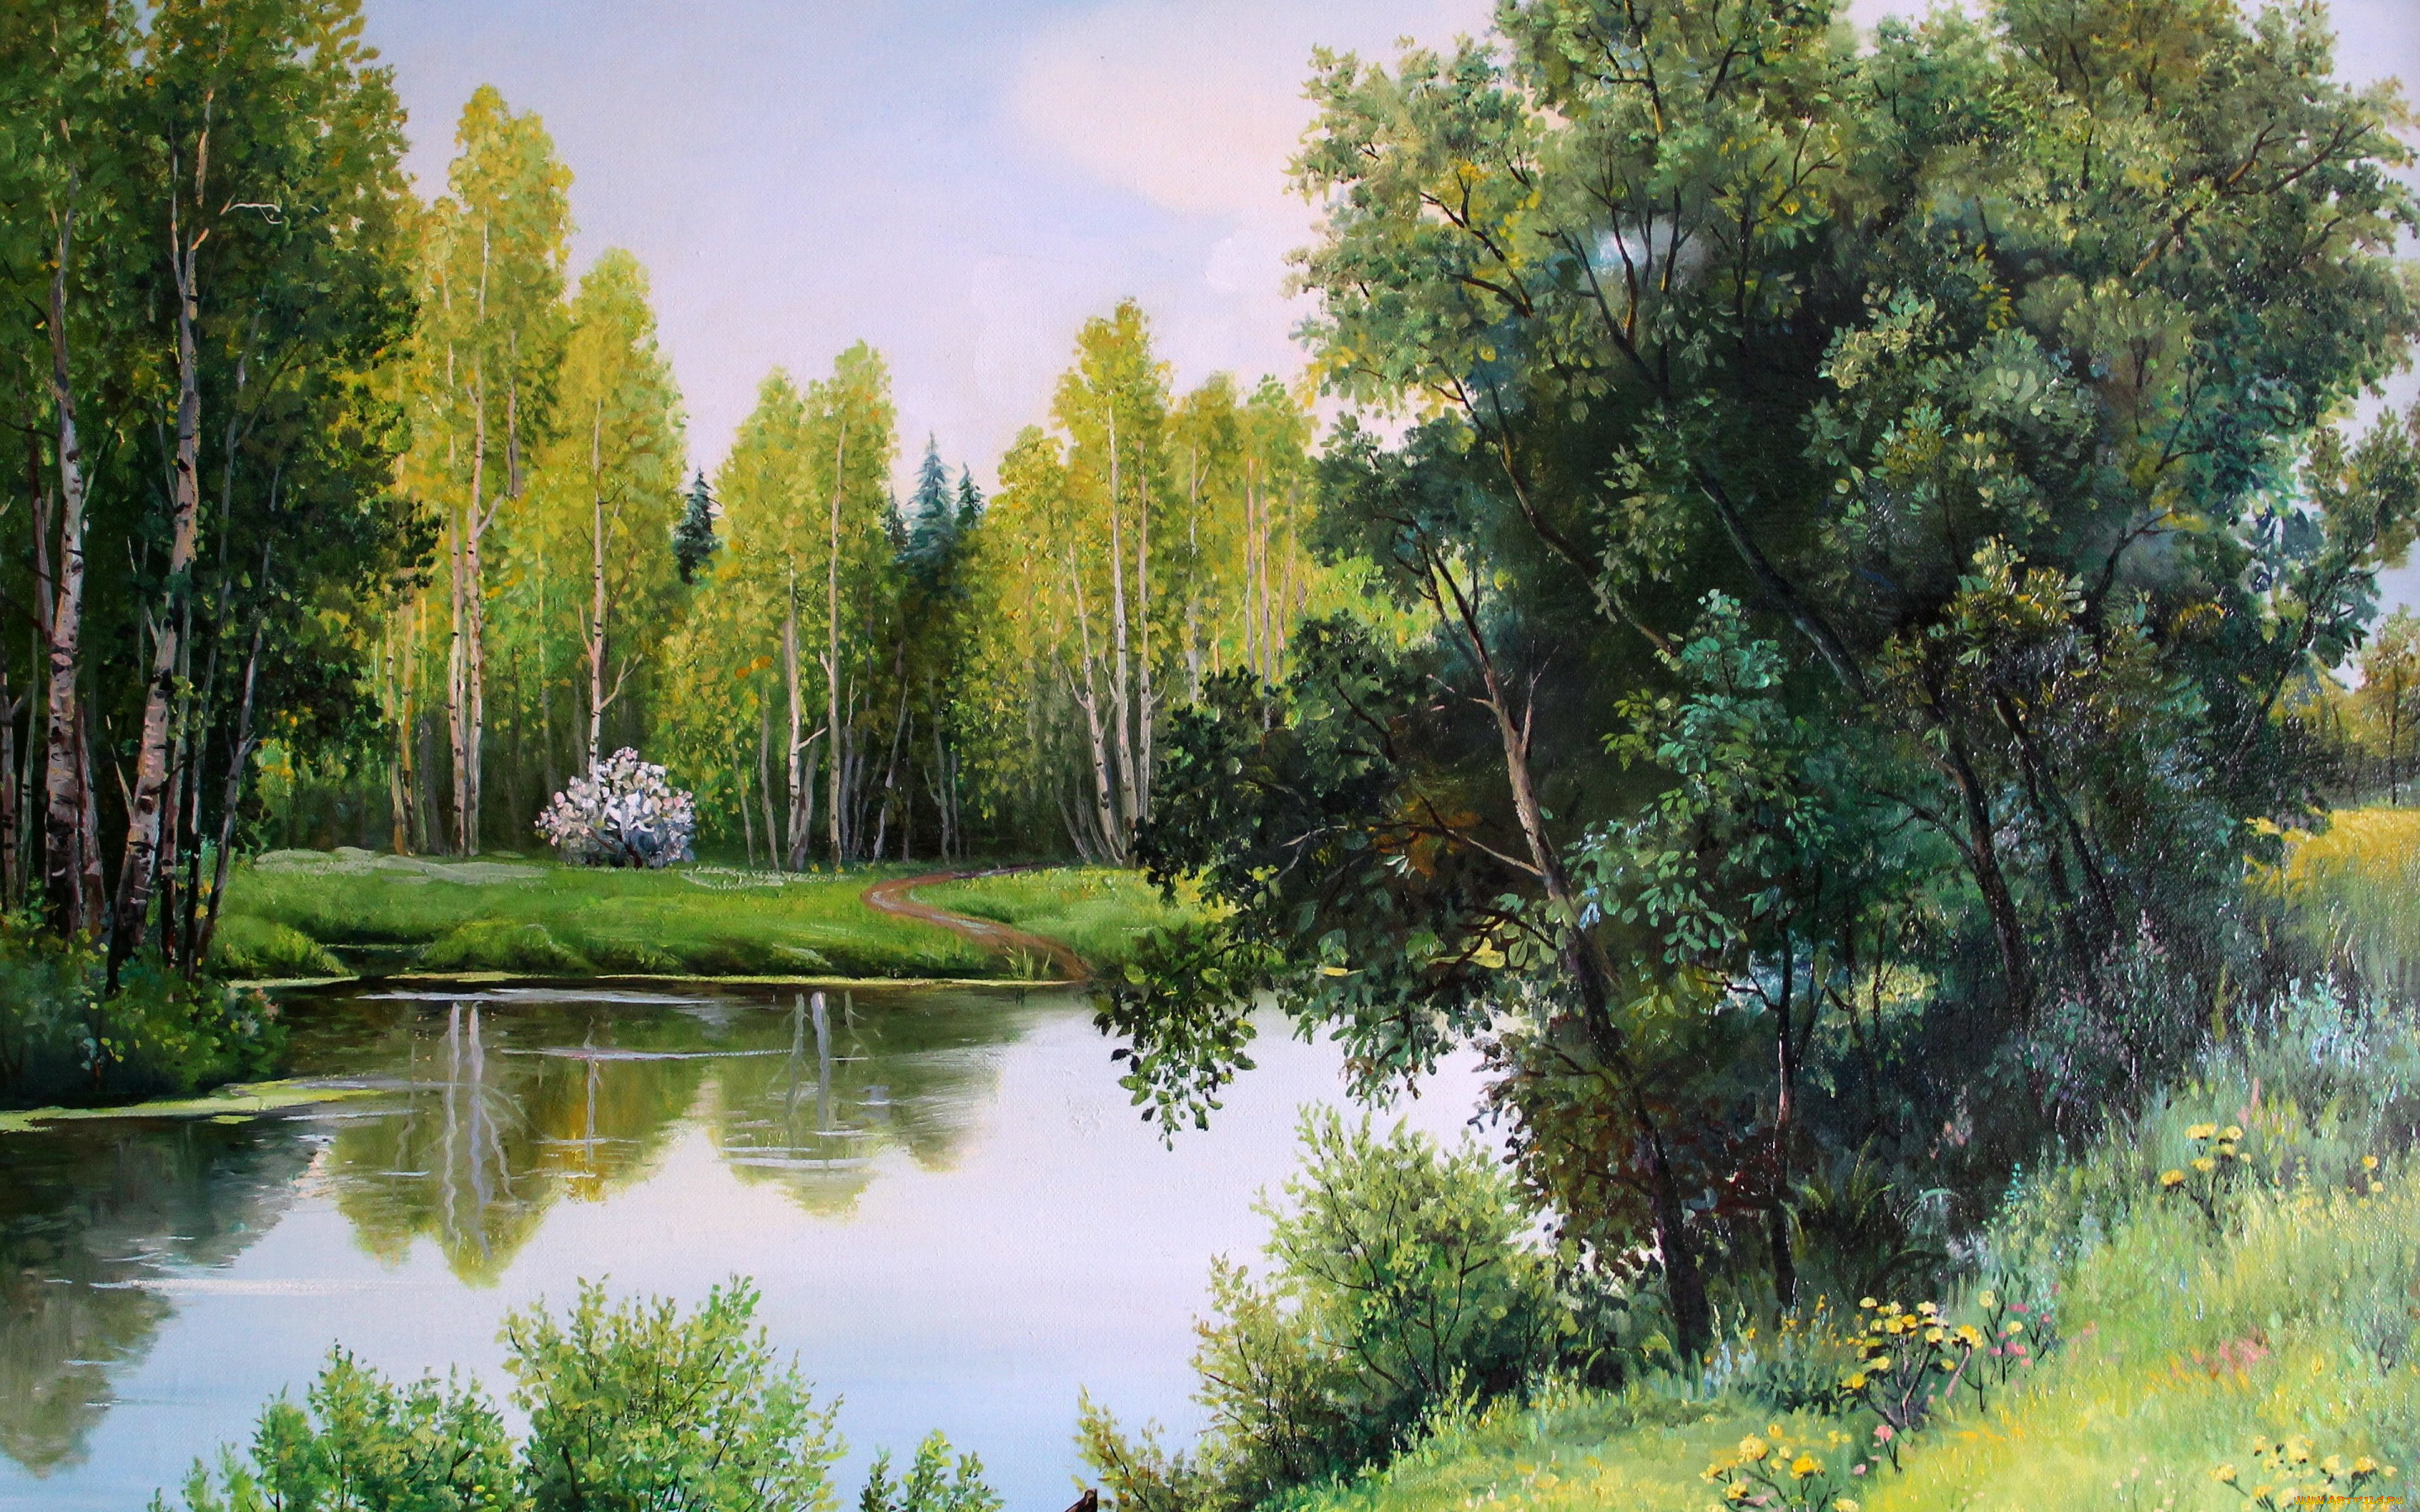 рисованное, живопись, gorbatenko, полотно, рисунок, лес, речка, деревья, берег, лодка, кусты, пейзаж, природа, may, greens